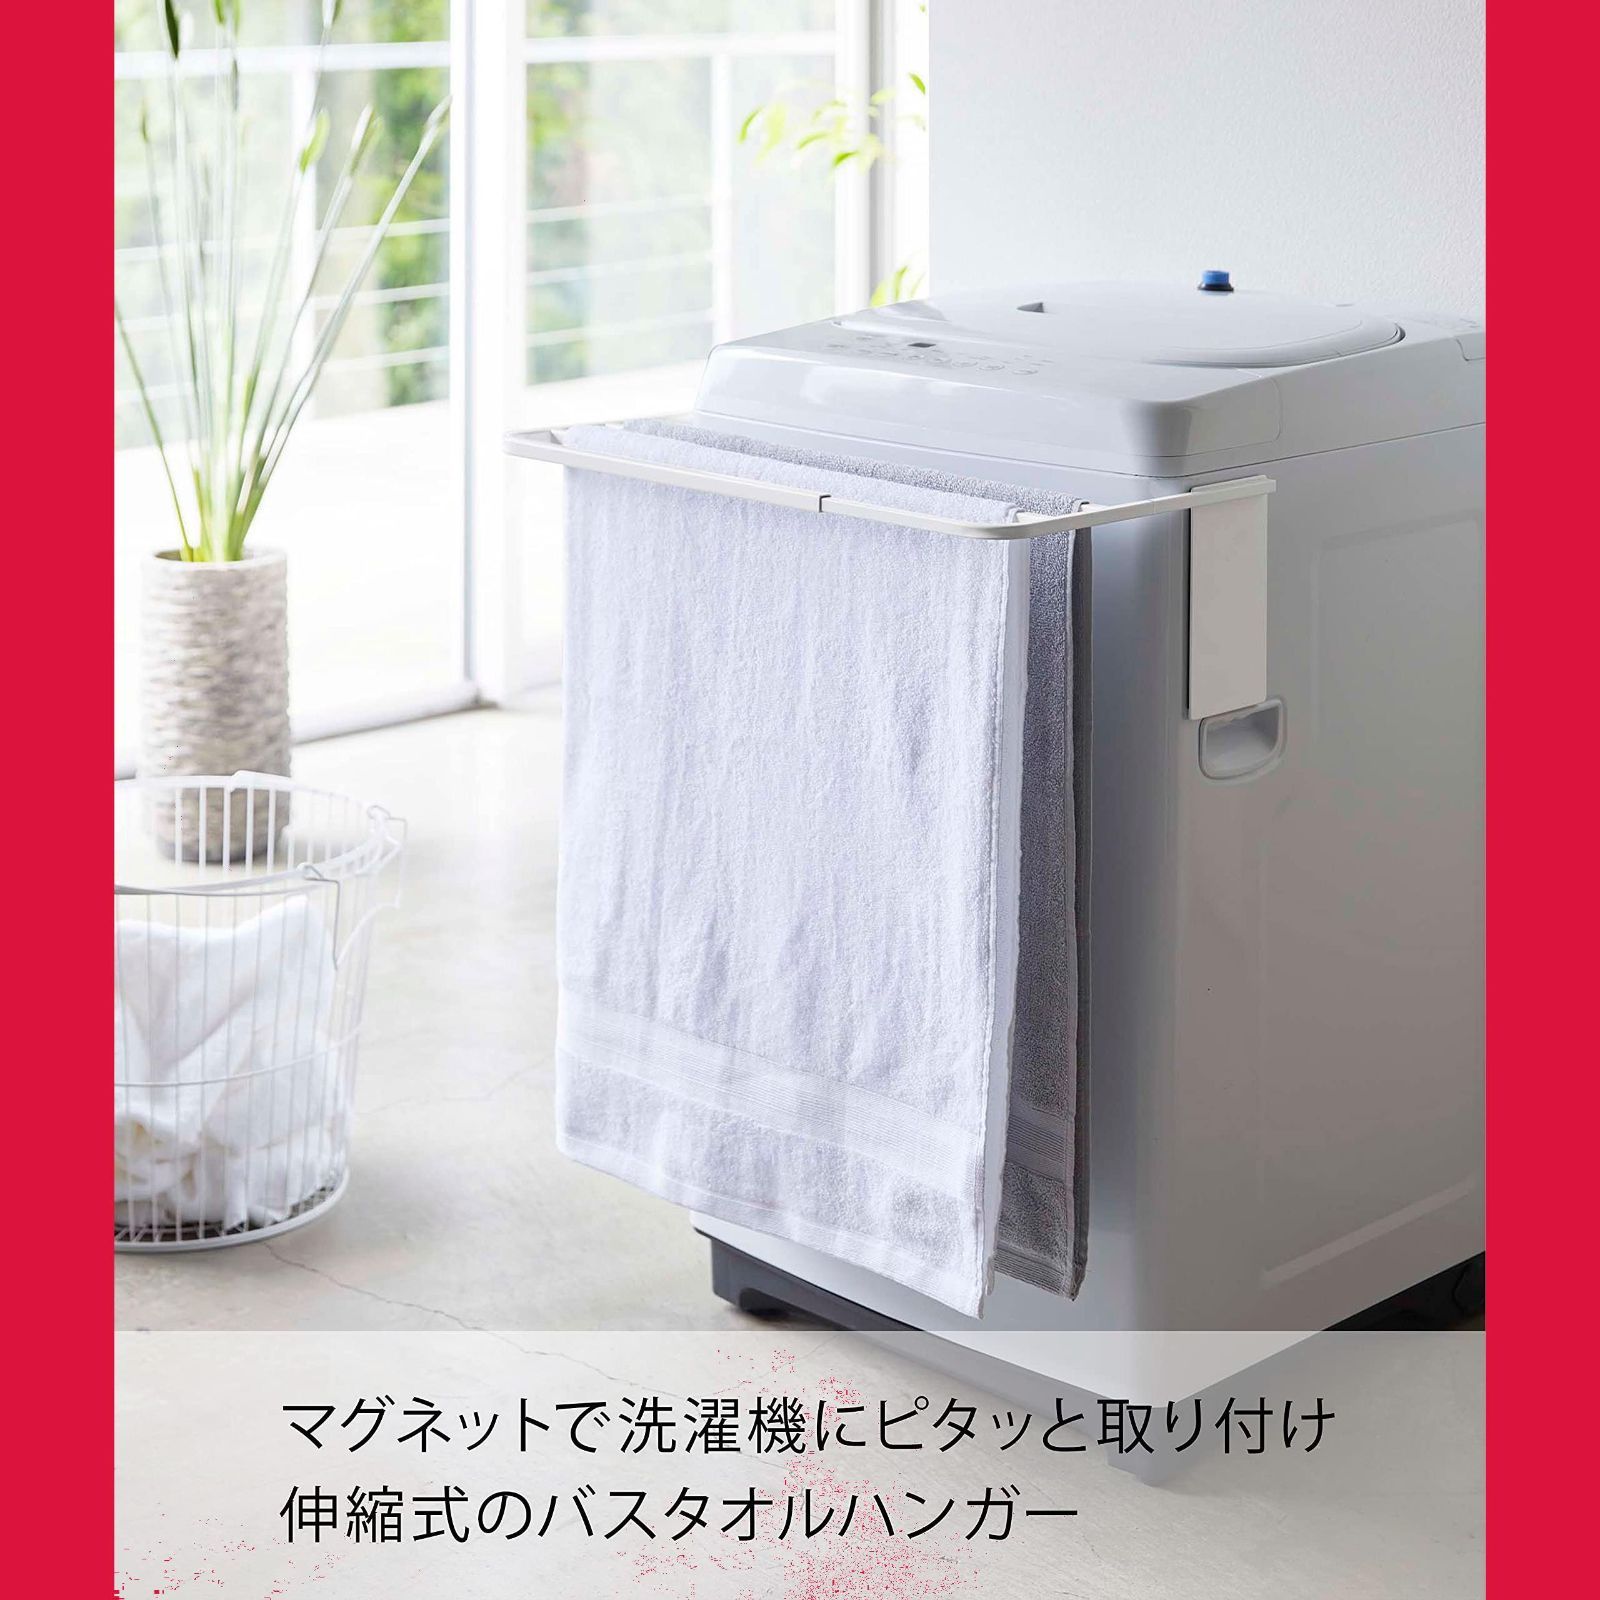 山崎実業(Yamazaki) マグネット伸縮洗濯機バスタオルハンガー